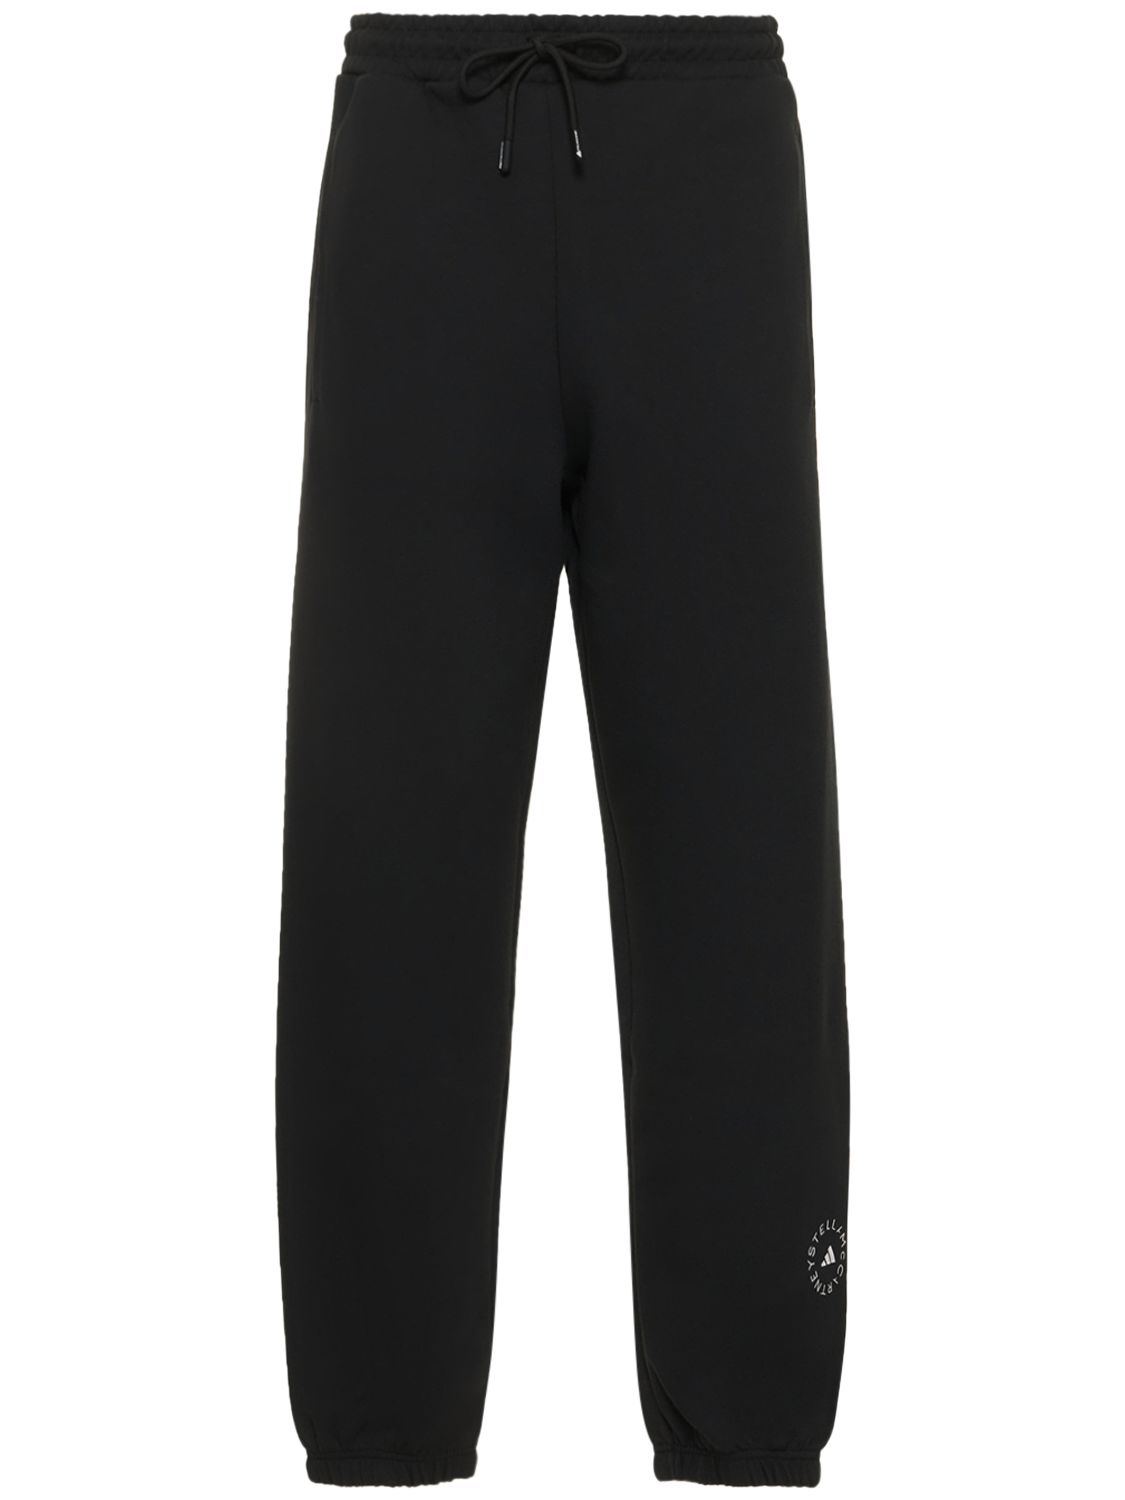 Adidas By Stella Mccartney Asmc True Casuals运动裤 In Black